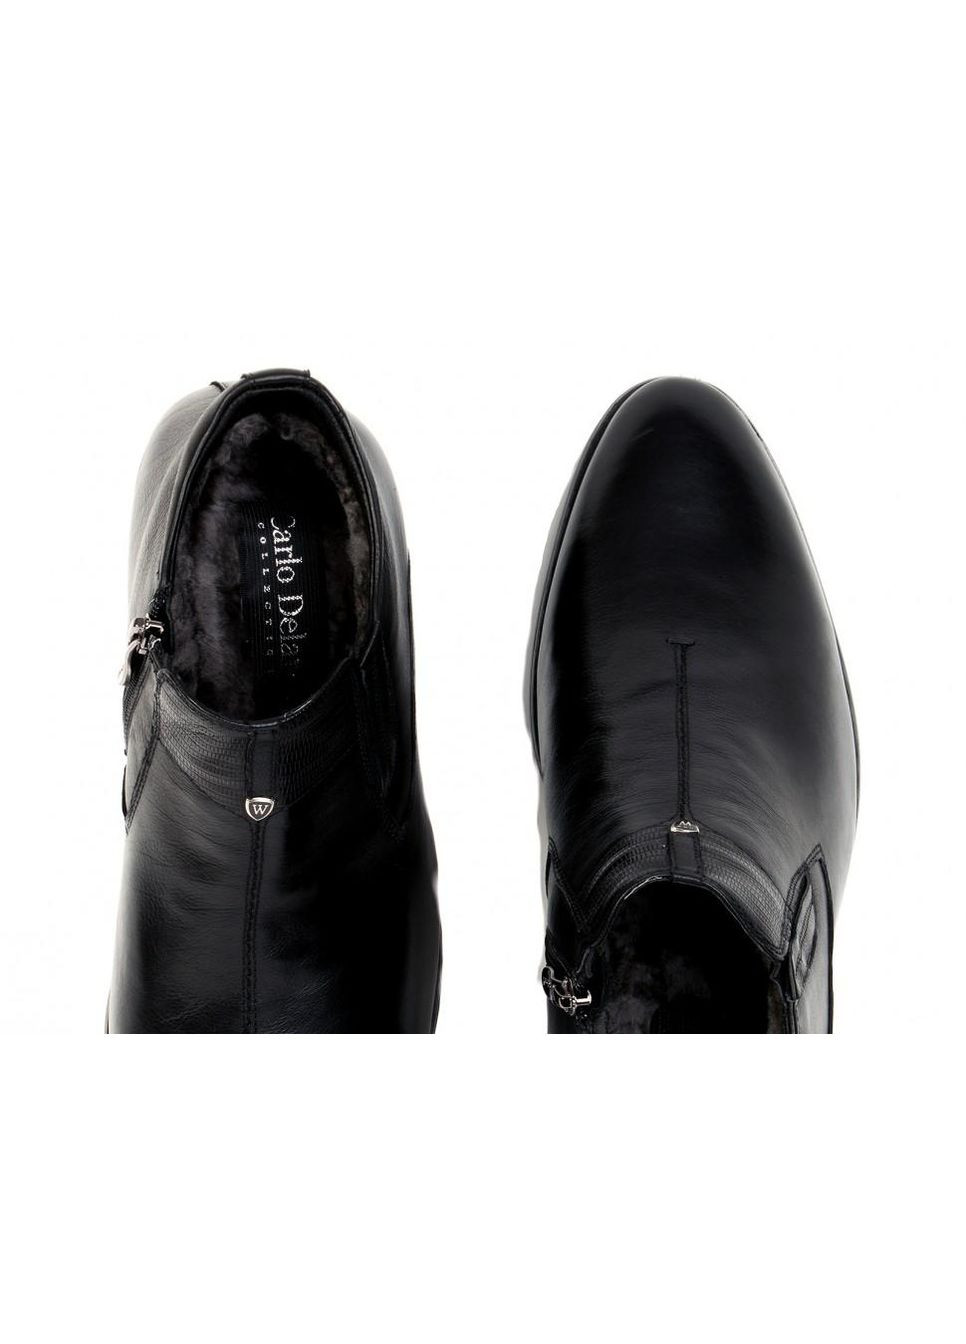 Черные зимние ботинки 7164129 цвет черный Carlo Delari